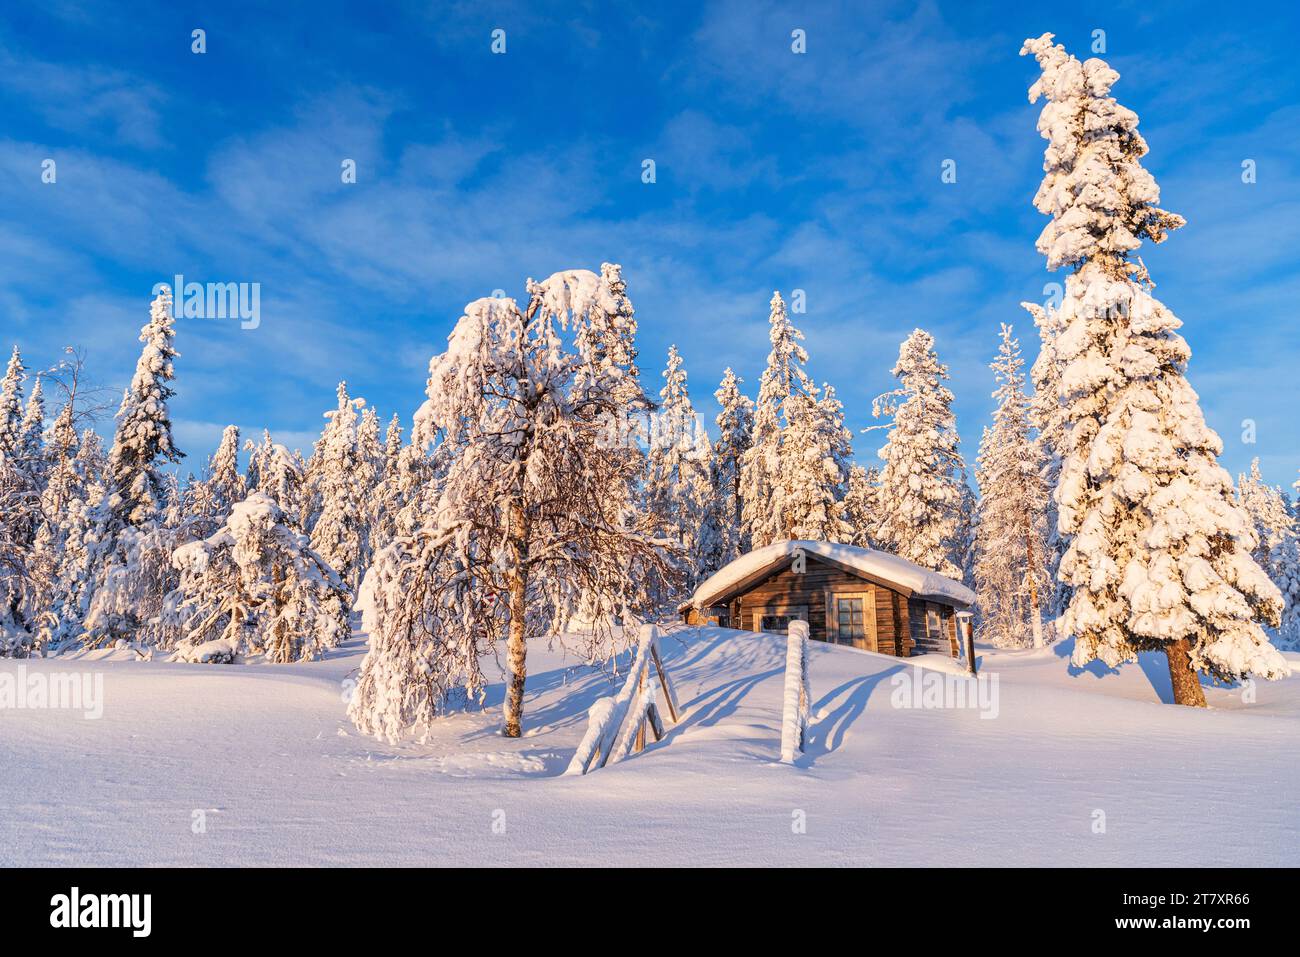 Ciel bleu au-dessus d'un chalet isolé parmi la forêt boréale couverte de glace et de neige, Kangos, Norrbotten, Laponie suédoise, Suède, Scandinavie, Europe Banque D'Images